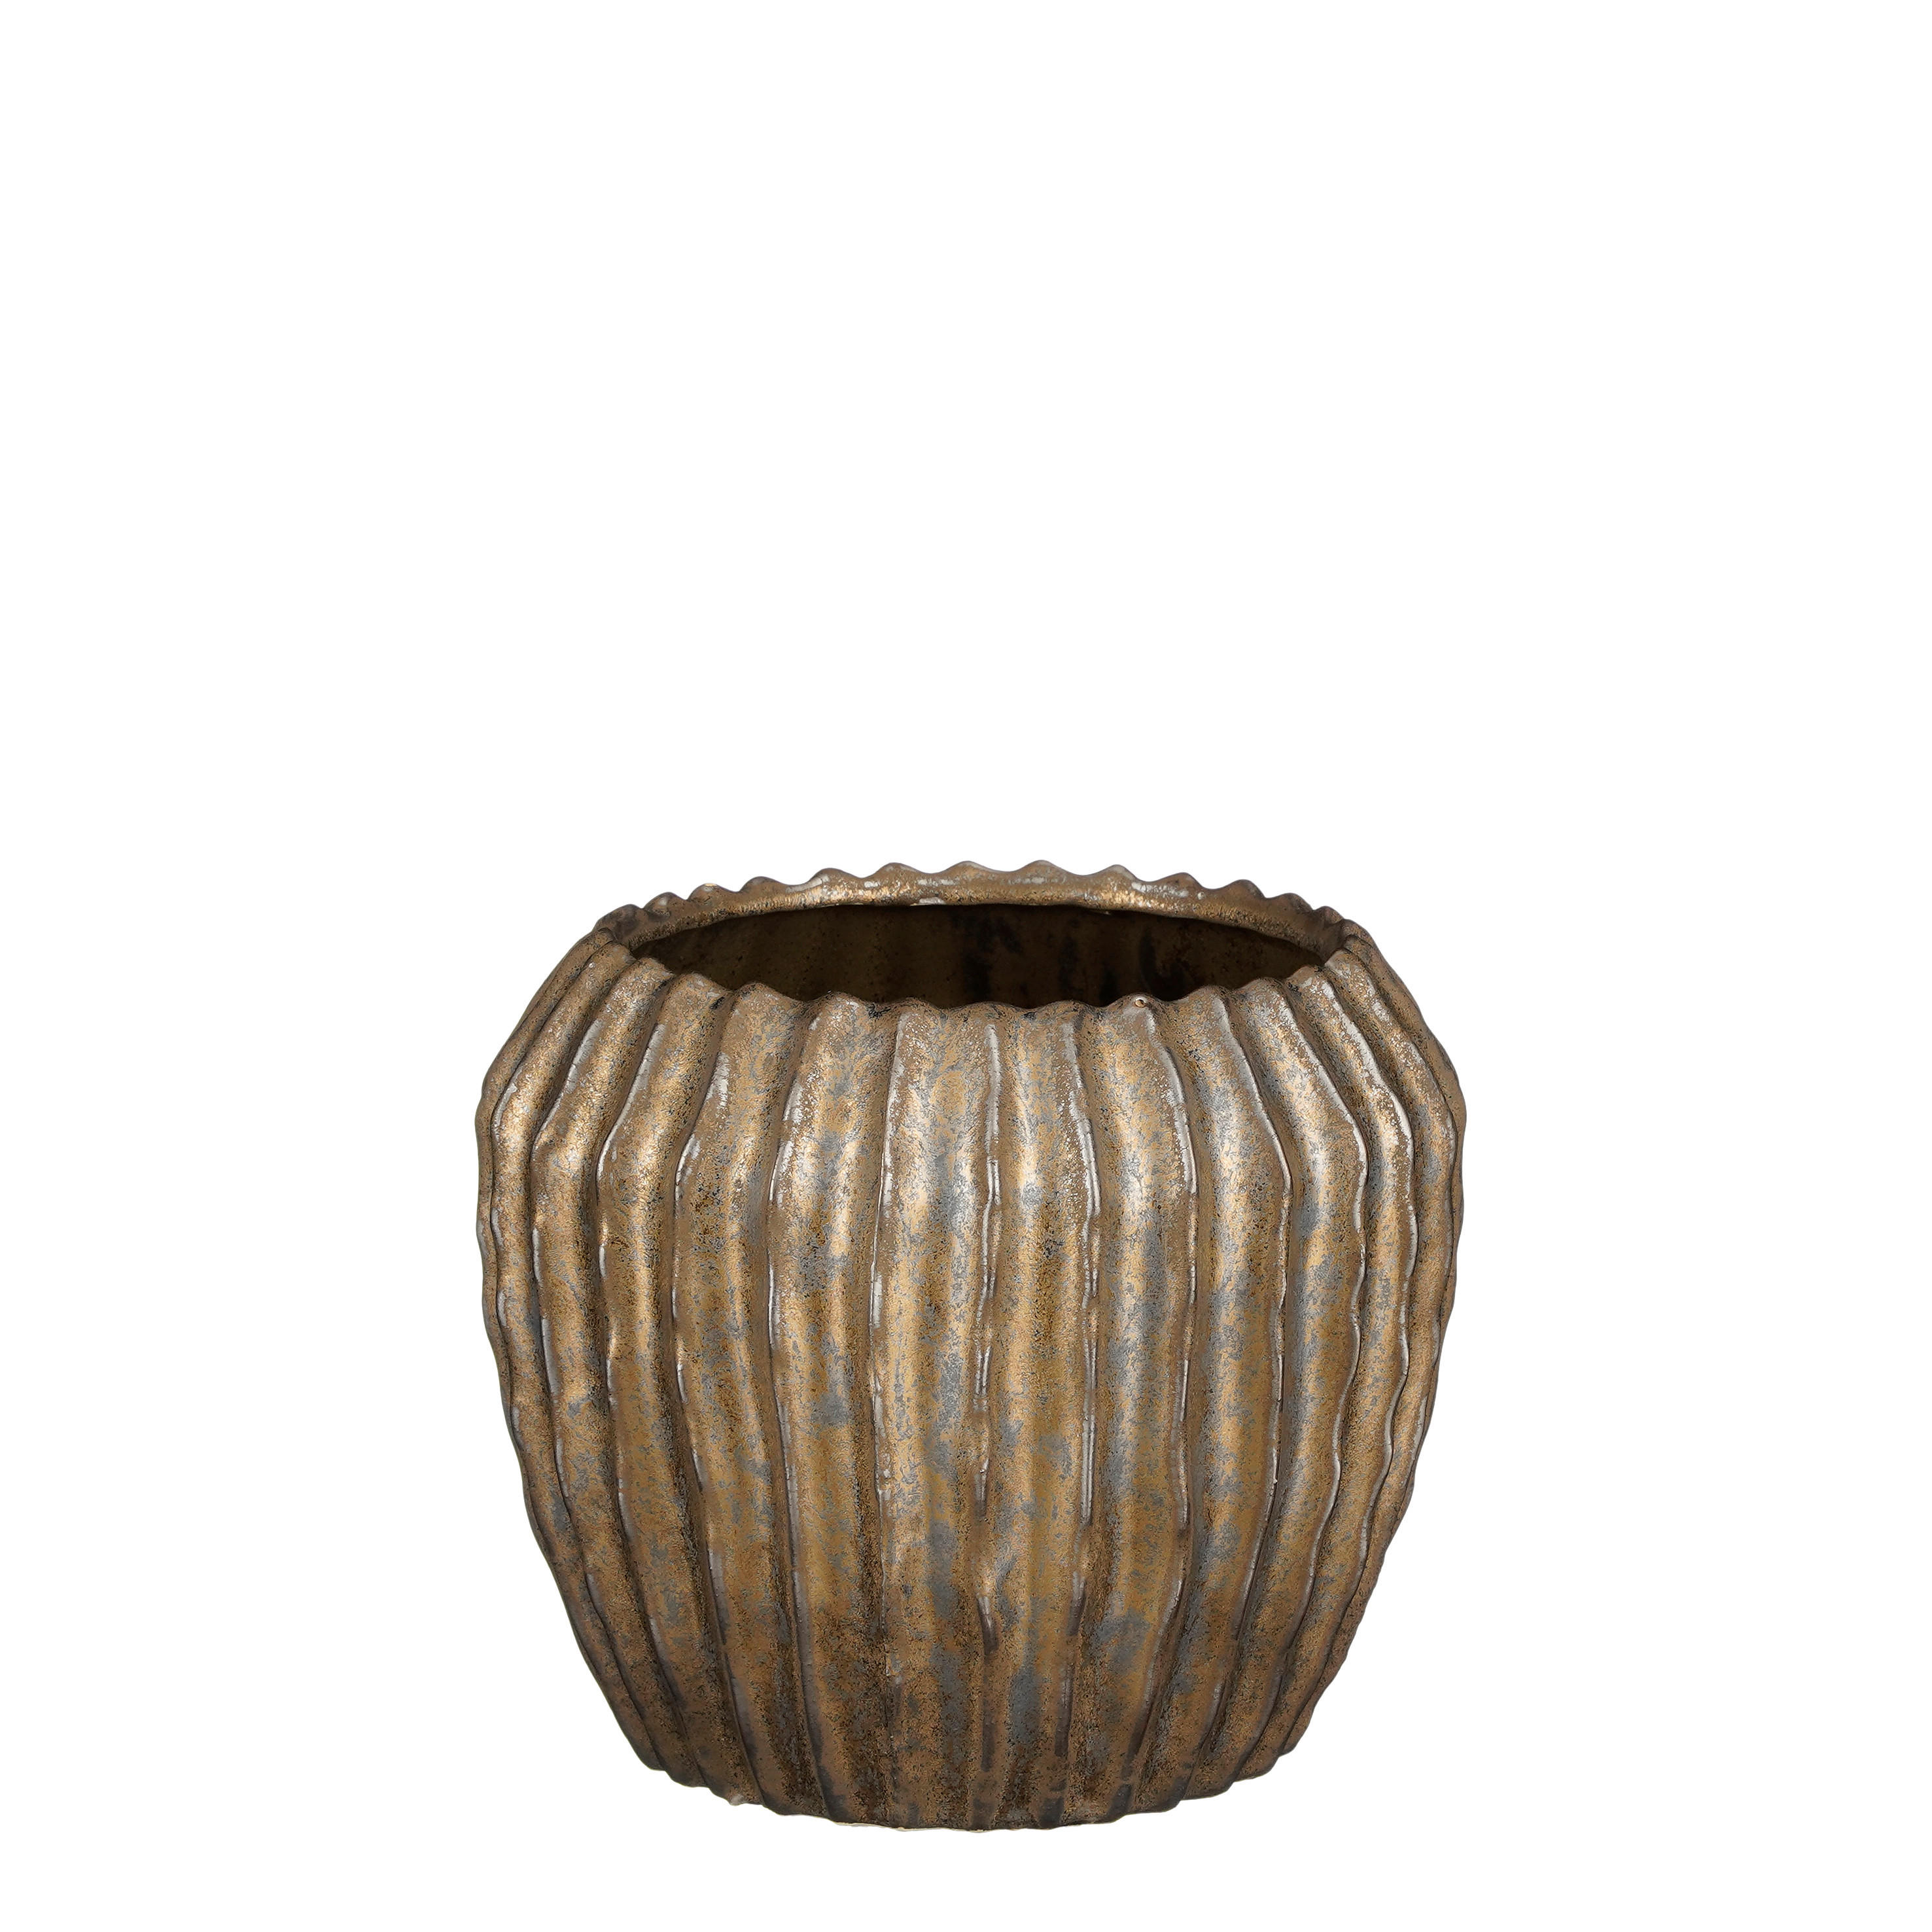 TEGLA ZA BILJKE  keramika  - brončane boje, Basics, keramika (18.5/16cm)